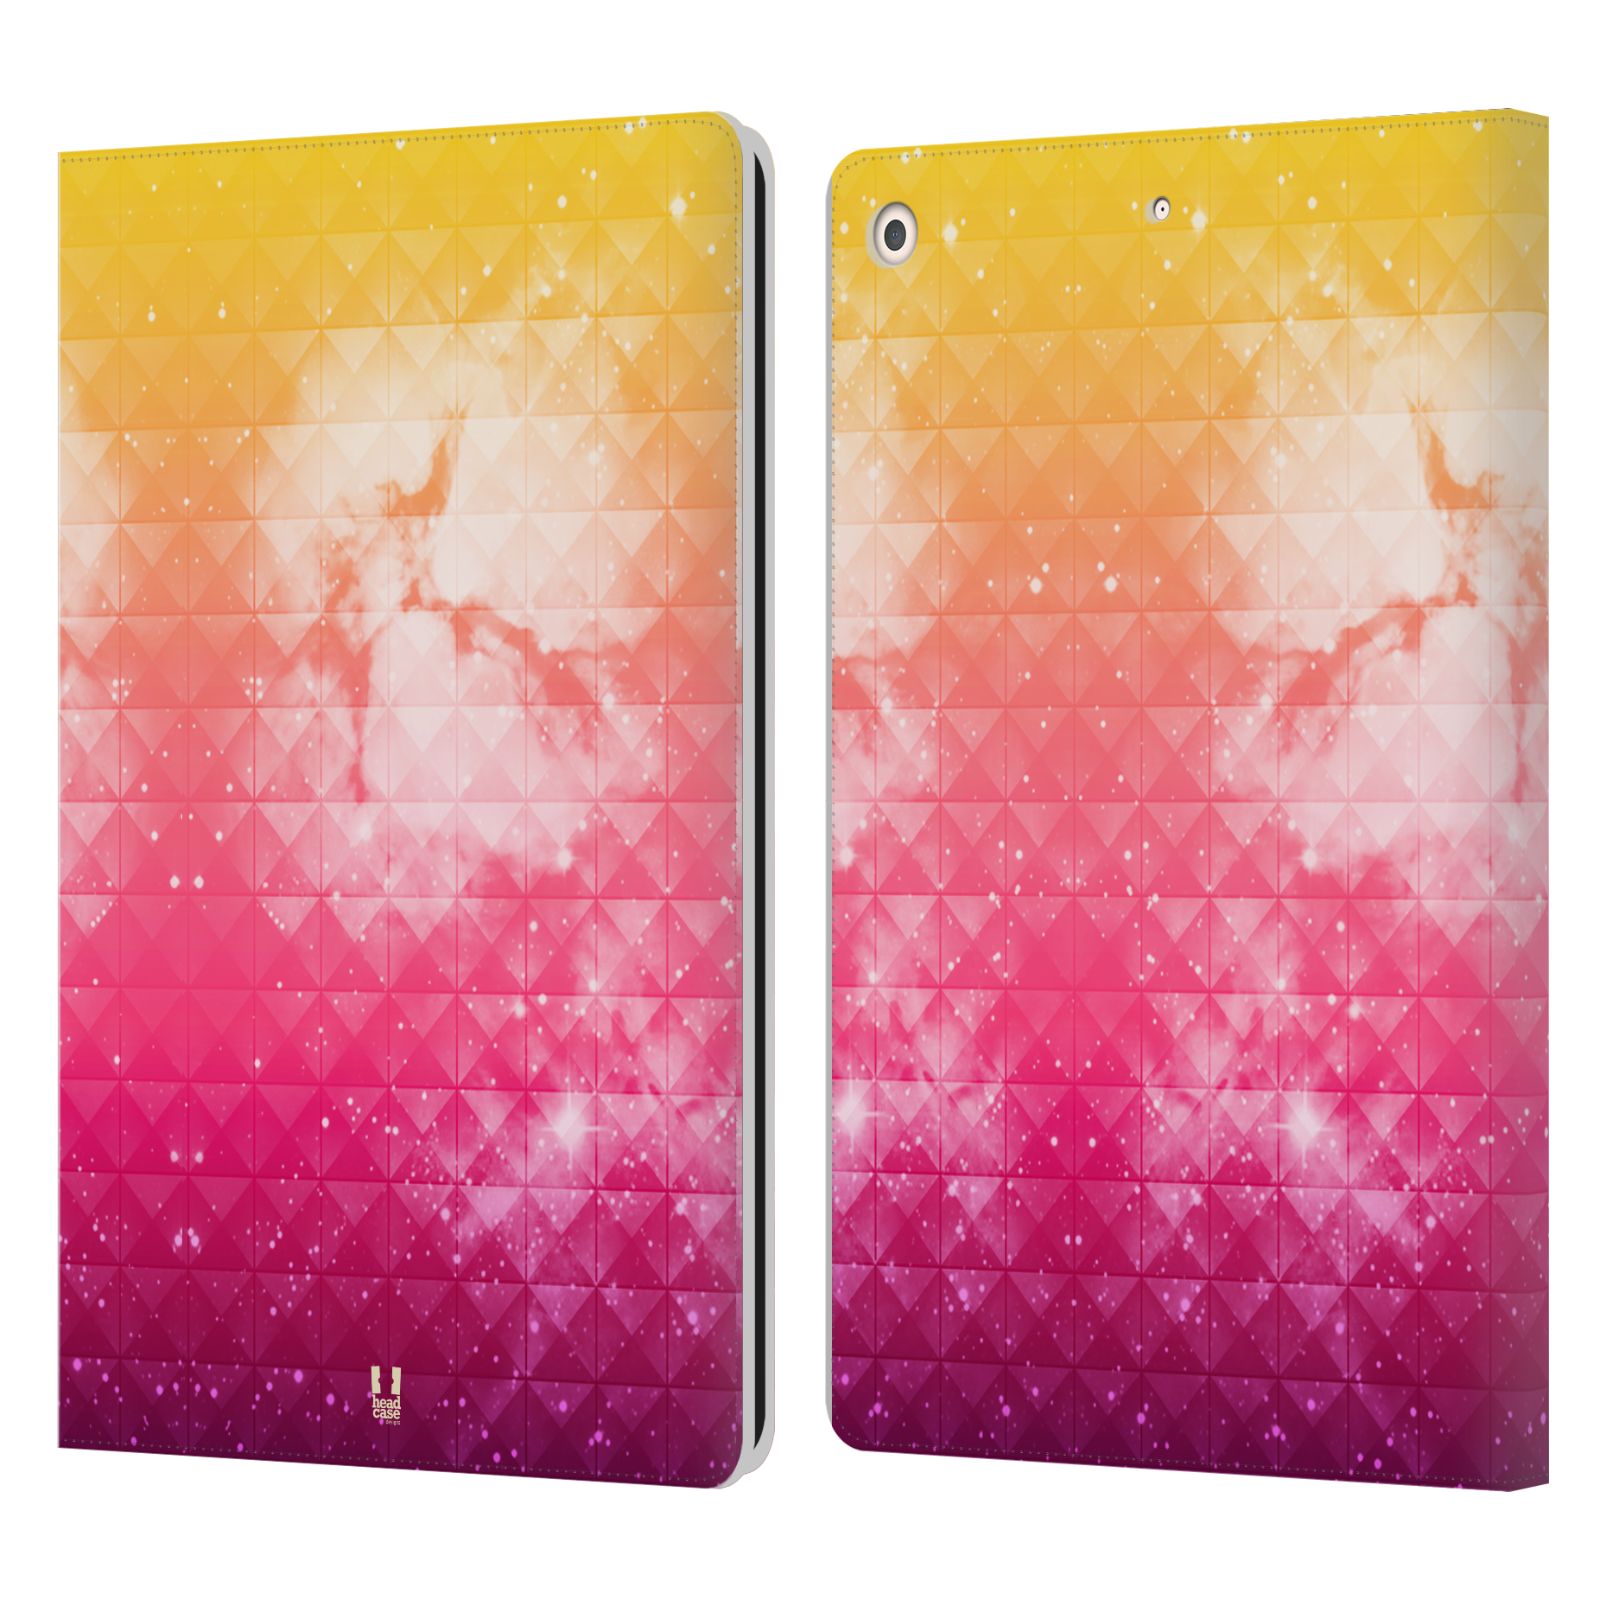 Pouzdro pro tablet Apple Ipad 10.2 - HEAD CASE - barevná vesmírná mlhovina oranžová a růžová